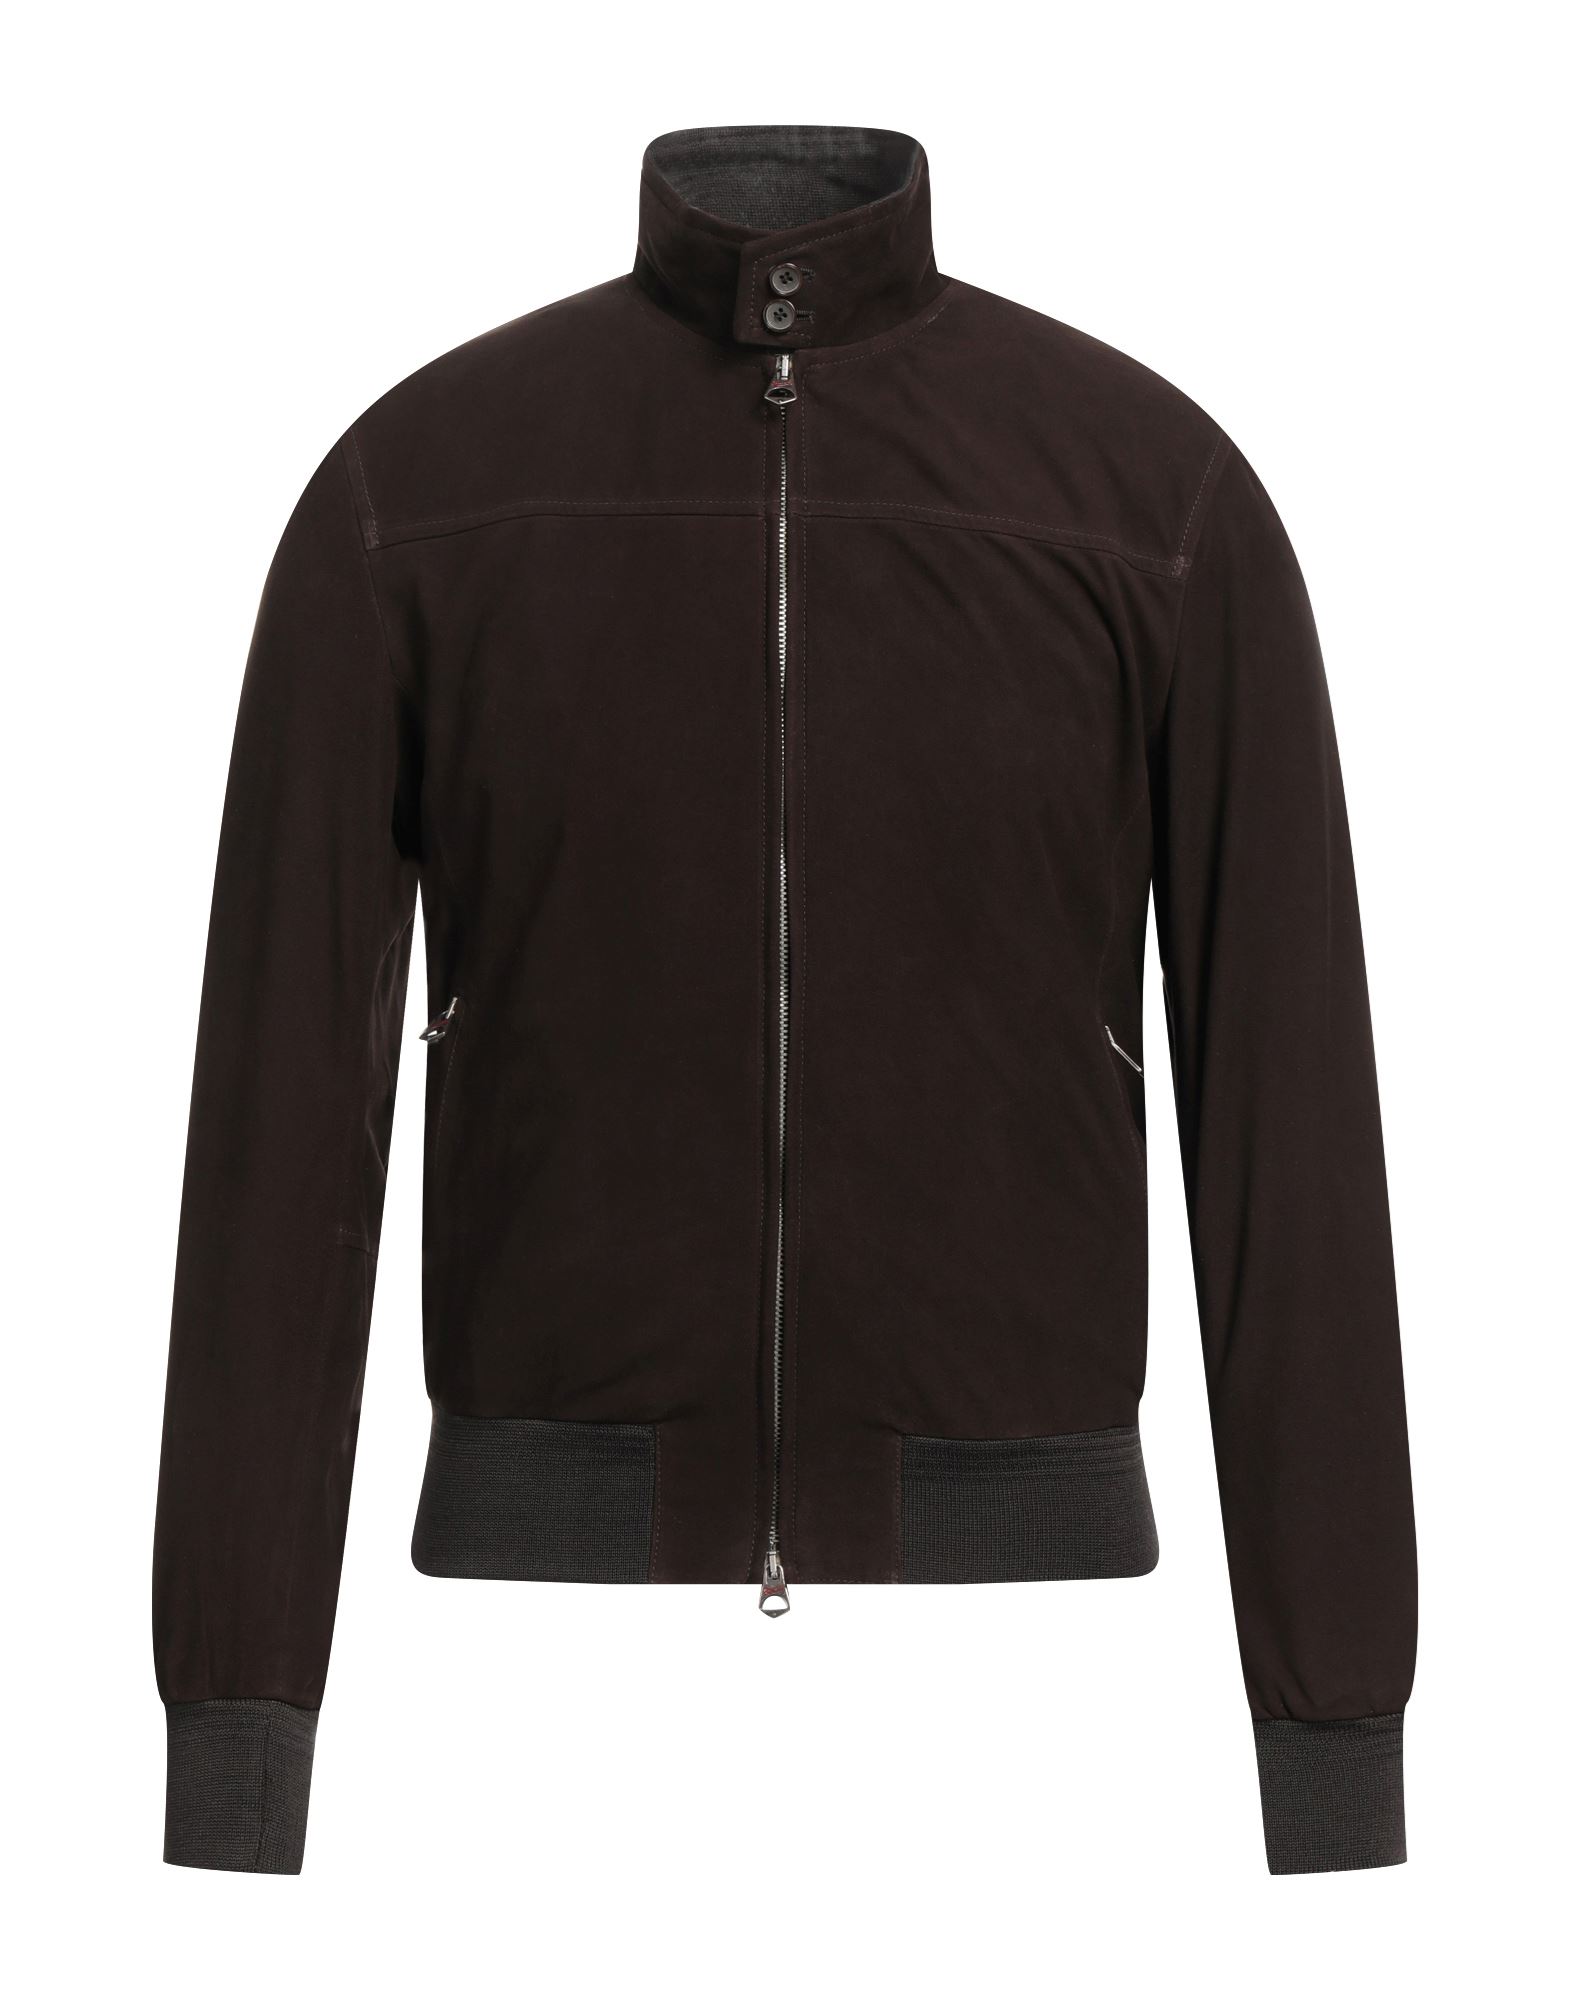 Shop Stewart Man Jacket Dark Brown Size M Soft Leather